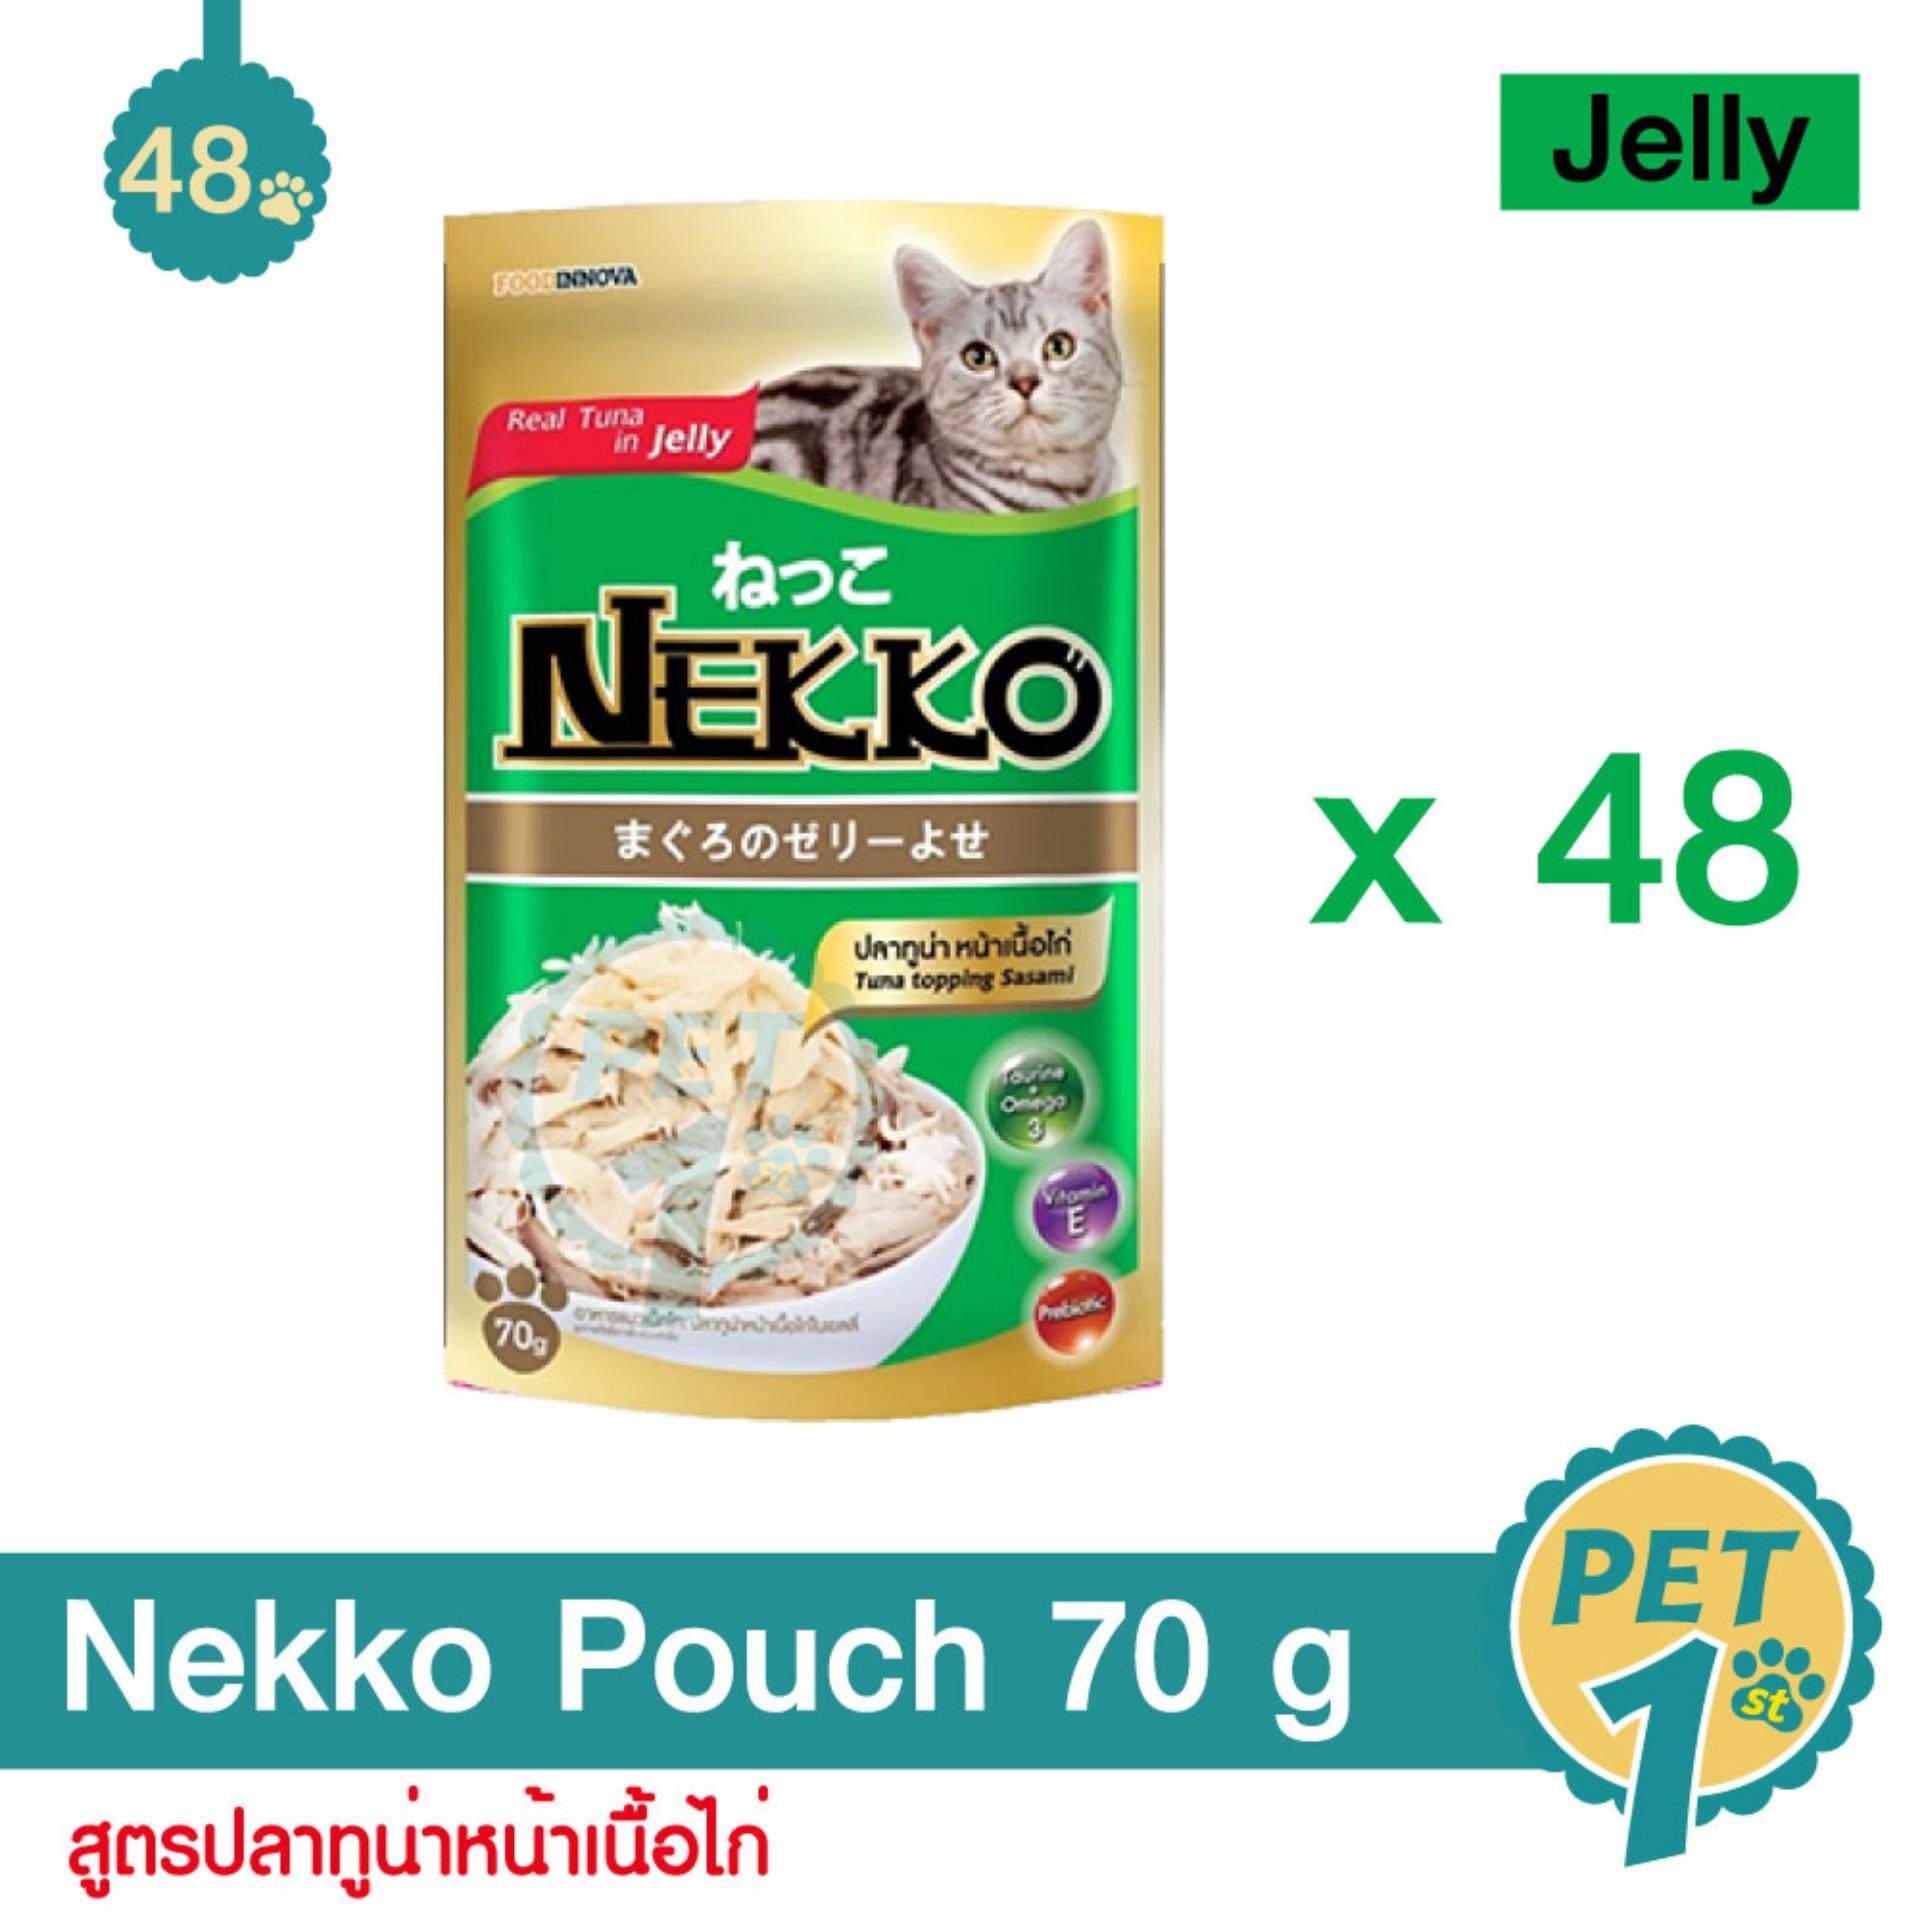 Nekko Pouch 70 g x 48 Units อาหารเปียกแมว สูตรปลาทูน่า หน้าเนื้อไก่ 48 ซอง